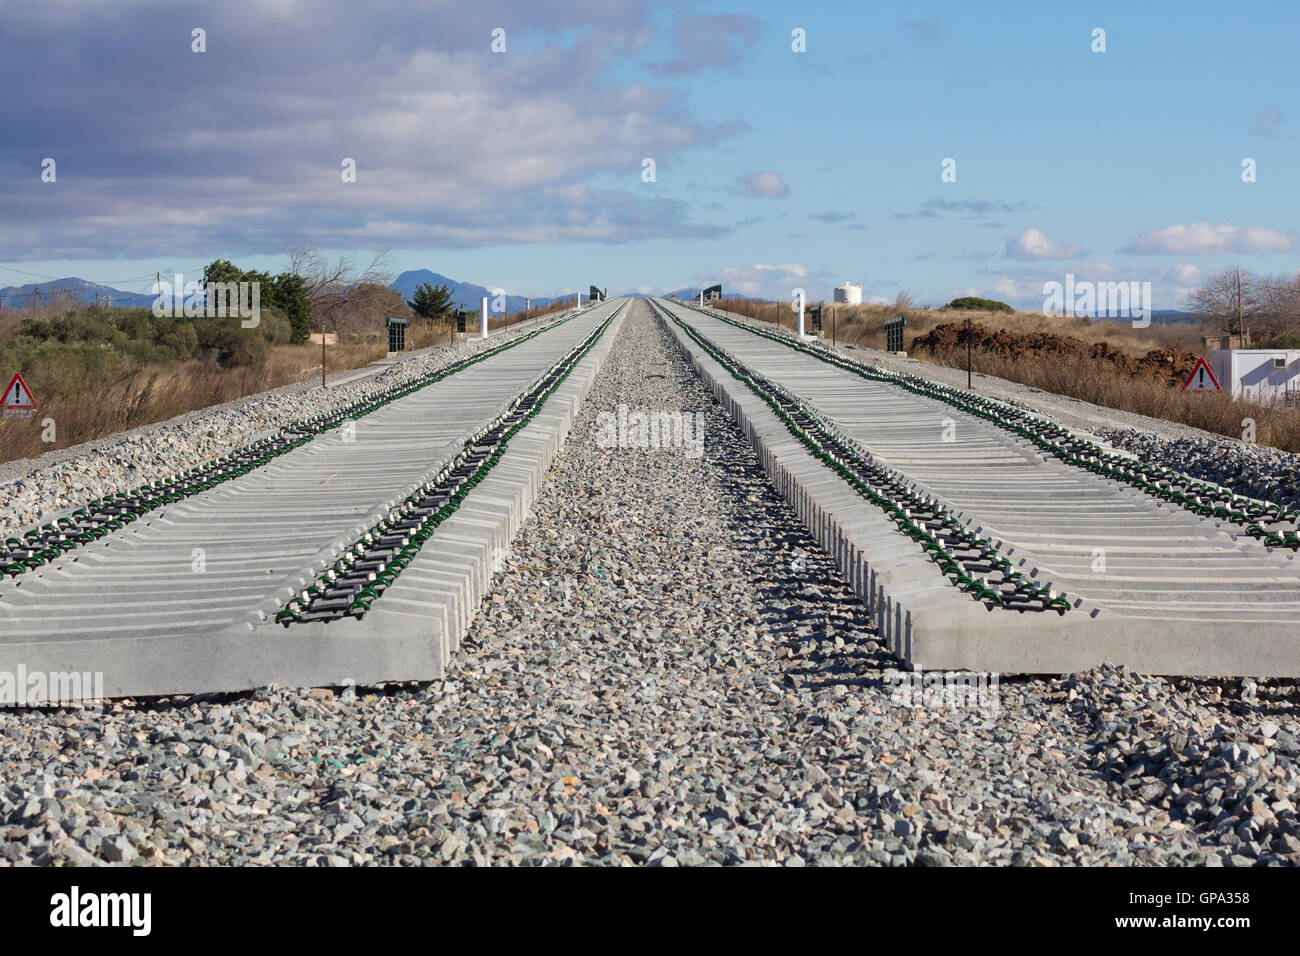 Eisenbahn auf Bau, Kies und Eisenbahn-Schwellen Stockfoto